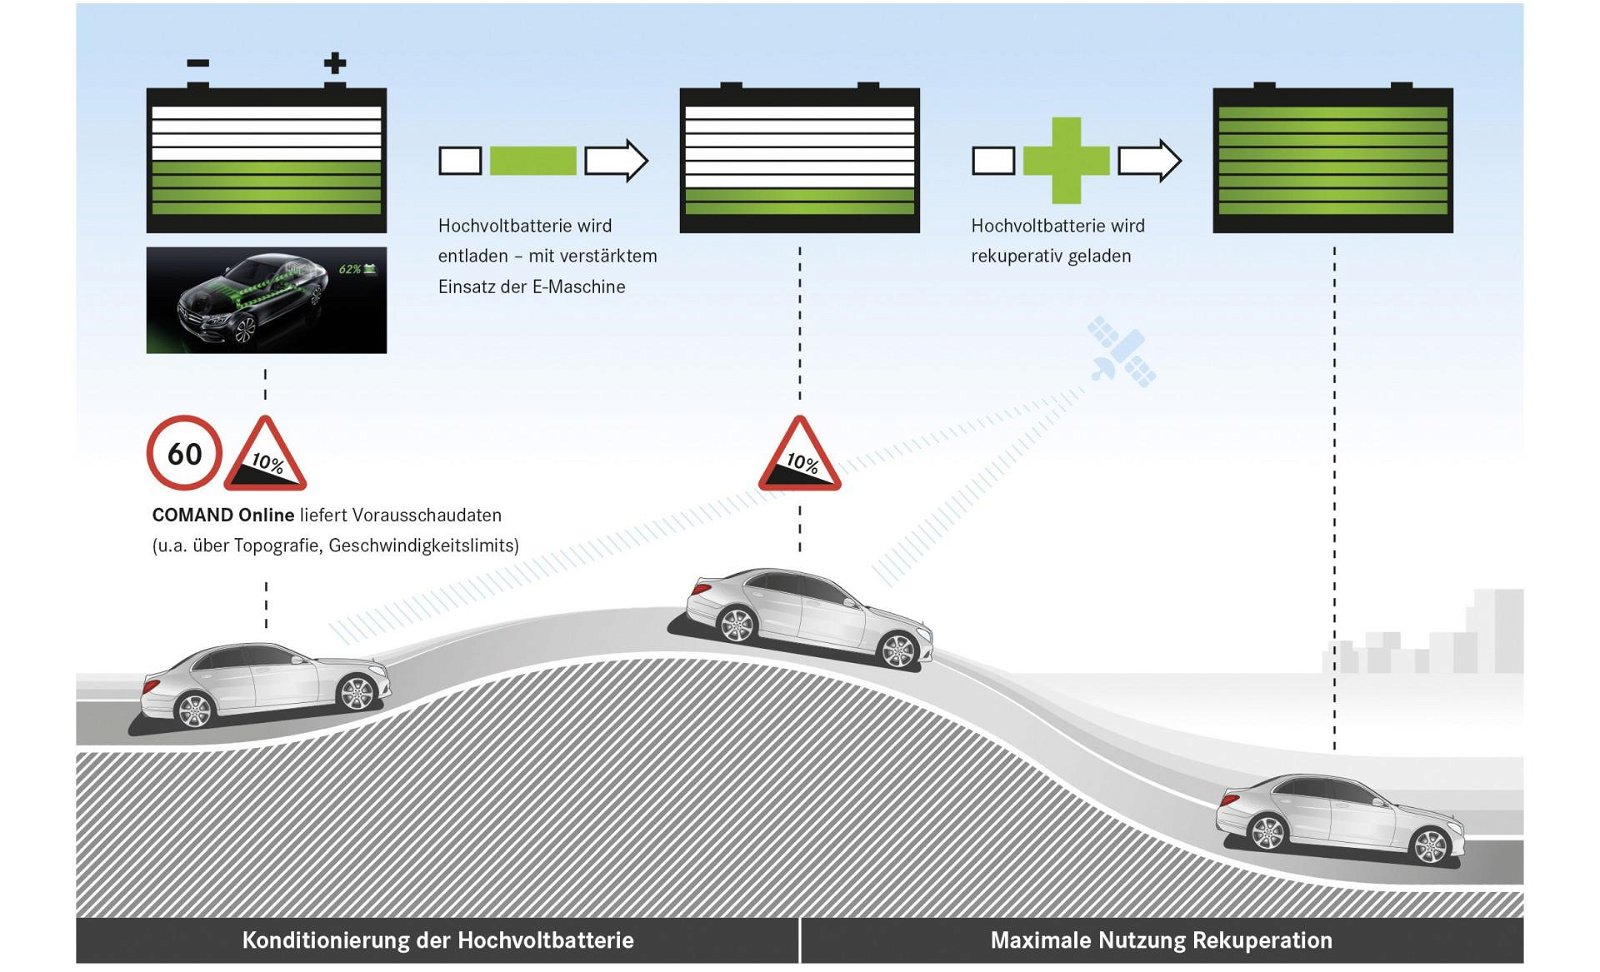 Mercedes-Benz C-Klasse Intelligent Hybrid, 2014: Rekuperationsenergie vollständig nutzen